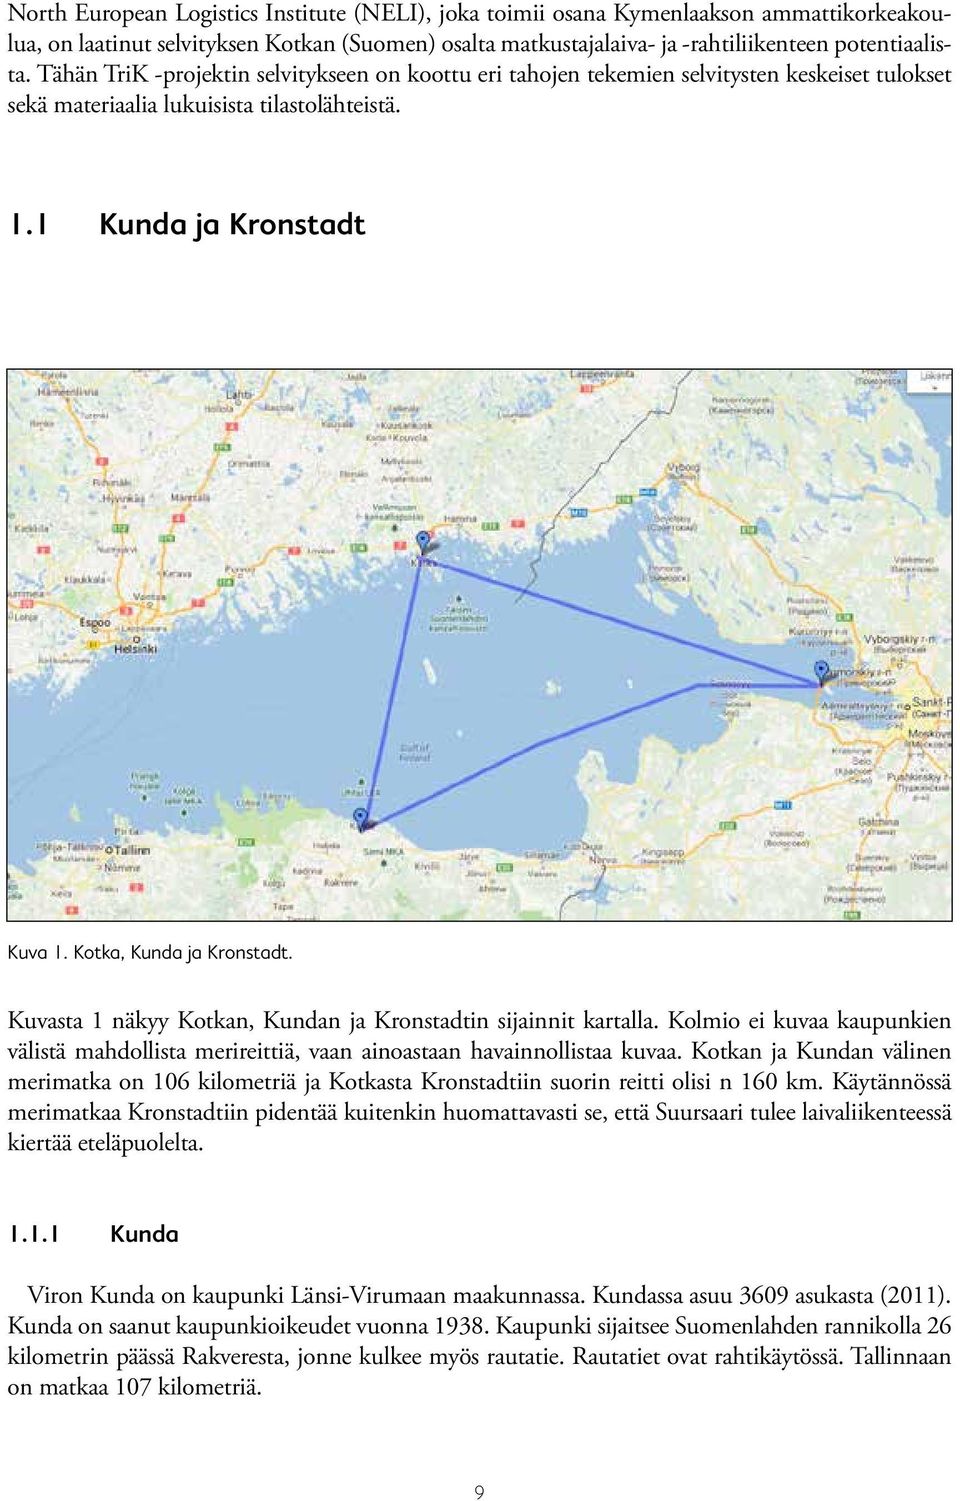 Kuvasta 1 näkyy Kotkan, Kundan ja Kronstadtin sijainnit kartalla. Kolmio ei kuvaa kaupunkien välistä mahdollista merireittiä, vaan ainoastaan havainnollistaa kuvaa.